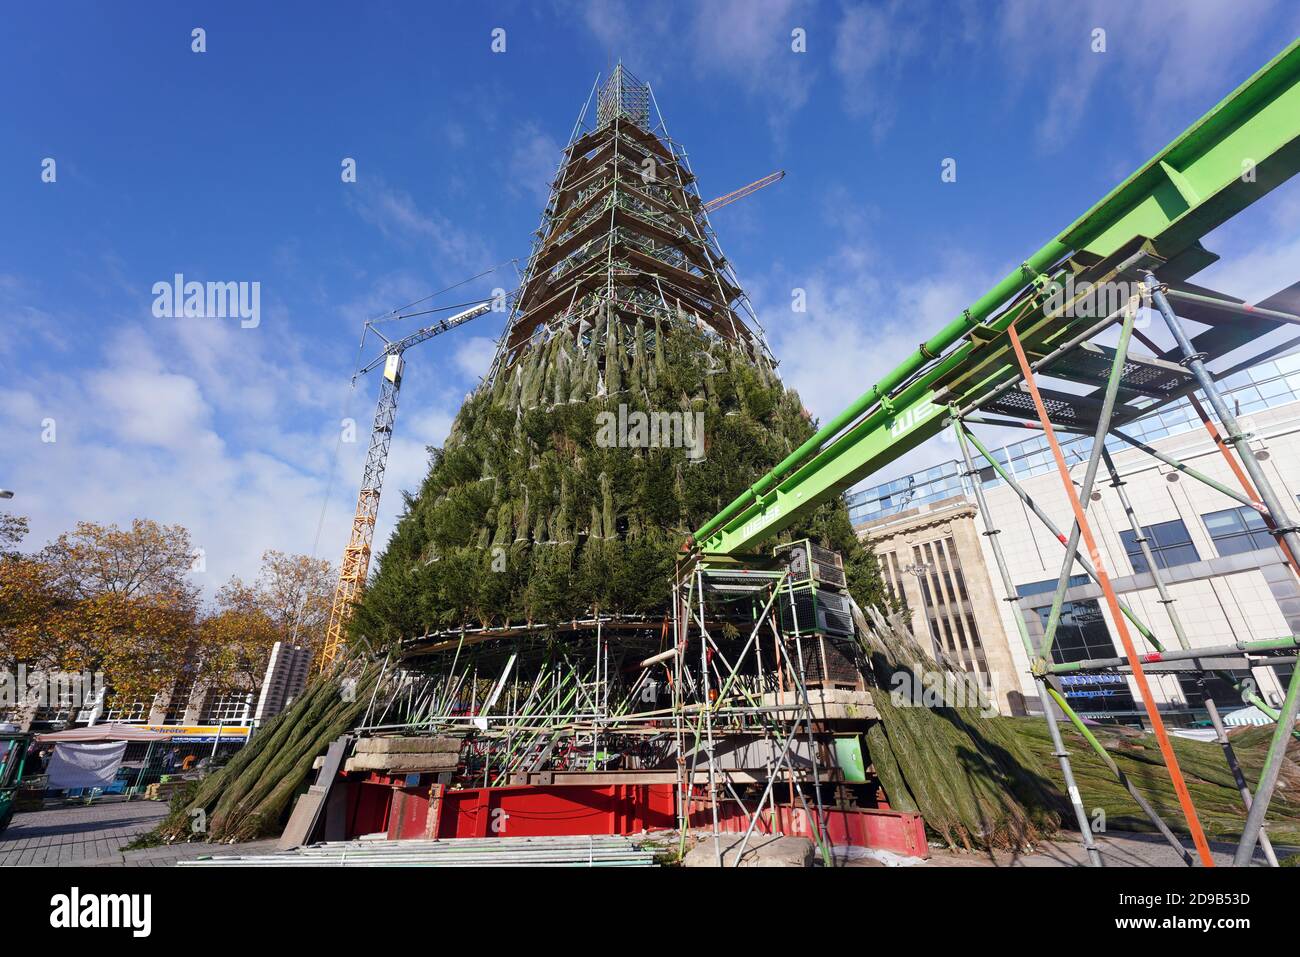 Dortmund, 4. November 2020: Der Bau des weltweit größten Weihnachtsbaums wird durch einen Beschluss der Dortmunder Stadtverwaltung vom 3. November 2020 mit Verweis auf die Coronapandemie nicht fortgesetzt. Das Gerüst mit dem halbfertigen Baum am Hansaplatz wird in den nächsten Tagen wieder abgebaut. Der Weihnachtsmarkt wurde in der Woche zuvor abgesagt. Stockfoto